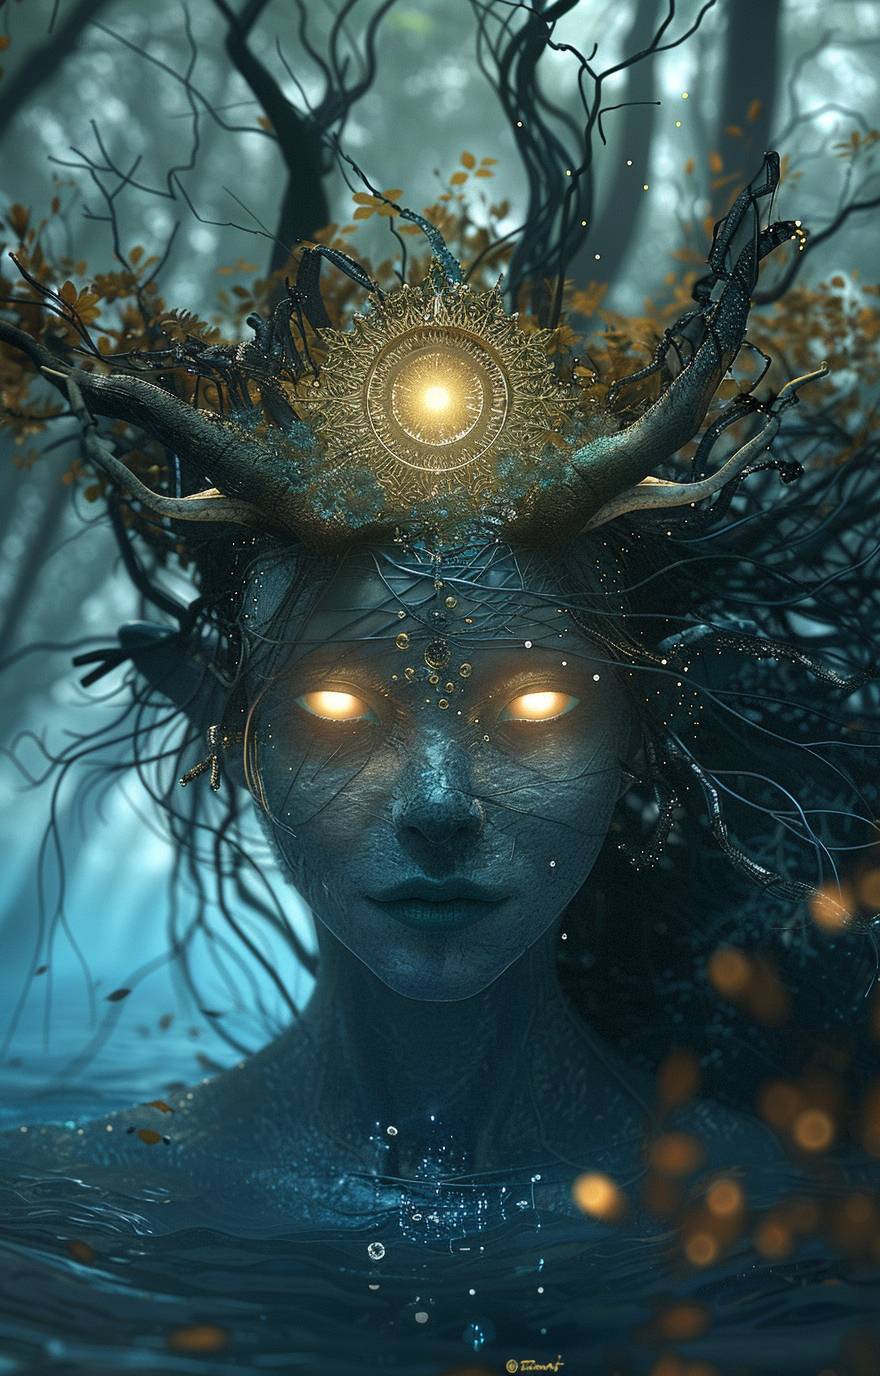 빛나는 황색 눈과 덩굴 머리카락을 지닌 푸른 색의 외계인 여성이 화려한 금빛 왕관을 쓰고 머리 앞쪽에 태양 모양을 한 모습입니다. 이마 양쪽 위에 작은 검은 뿔이 두 개 있으며, 디지털 아트 스타일로 수중에 서 있으며, 뒤에 나무가 보입니다.